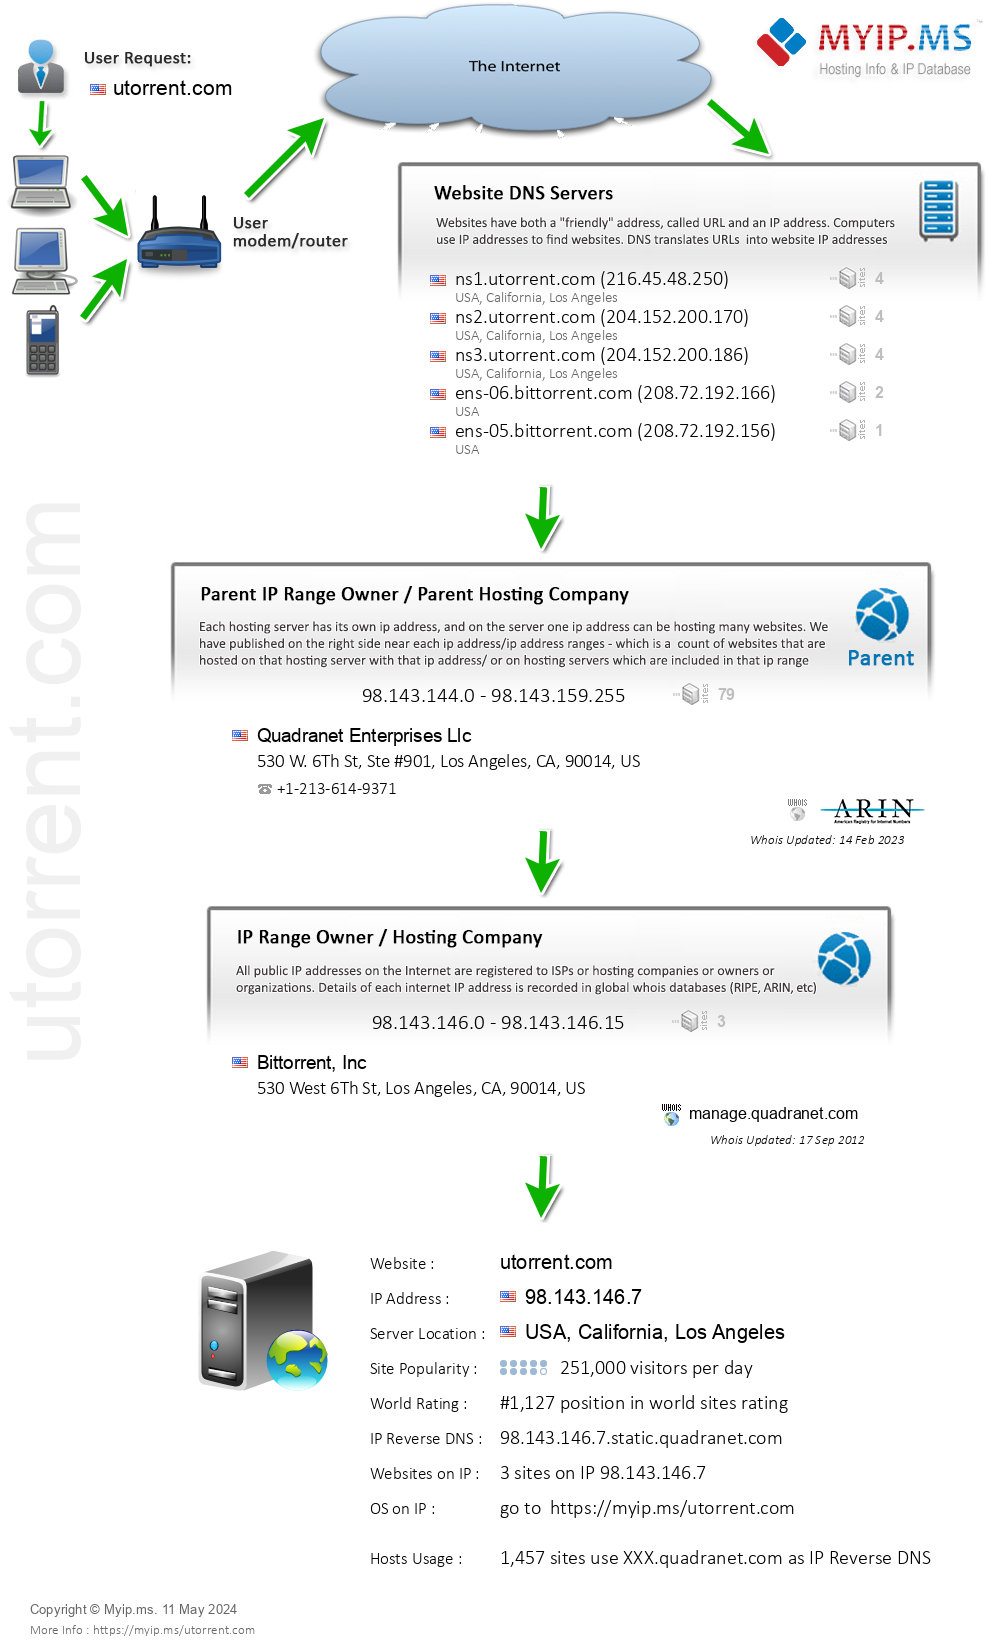 Utorrent.com - Website Hosting Visual IP Diagram